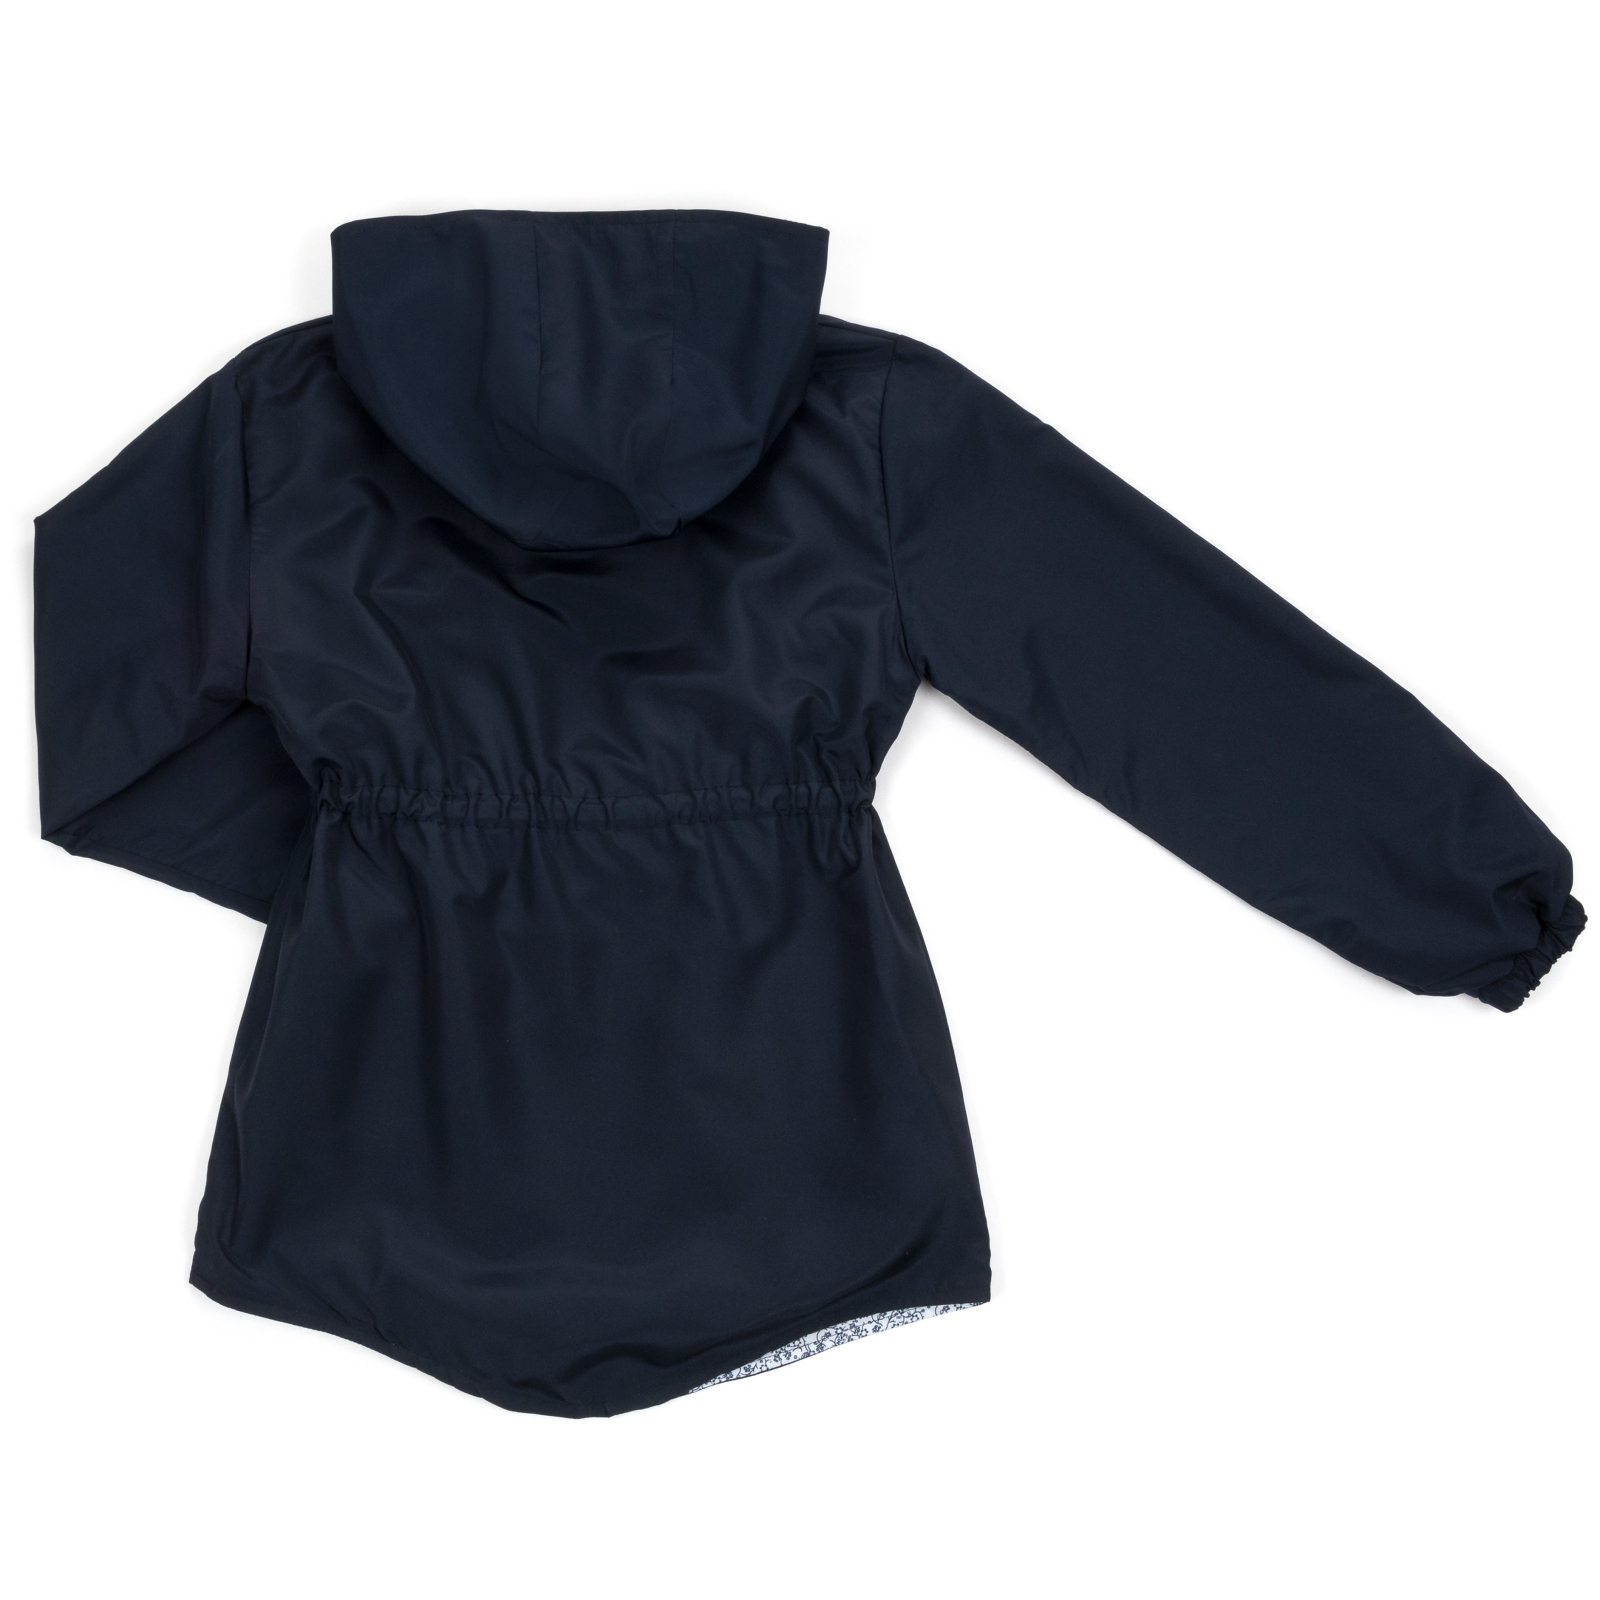 Куртка Haknur ветровка с капюшоном (7855-146G-blue) изображение 2